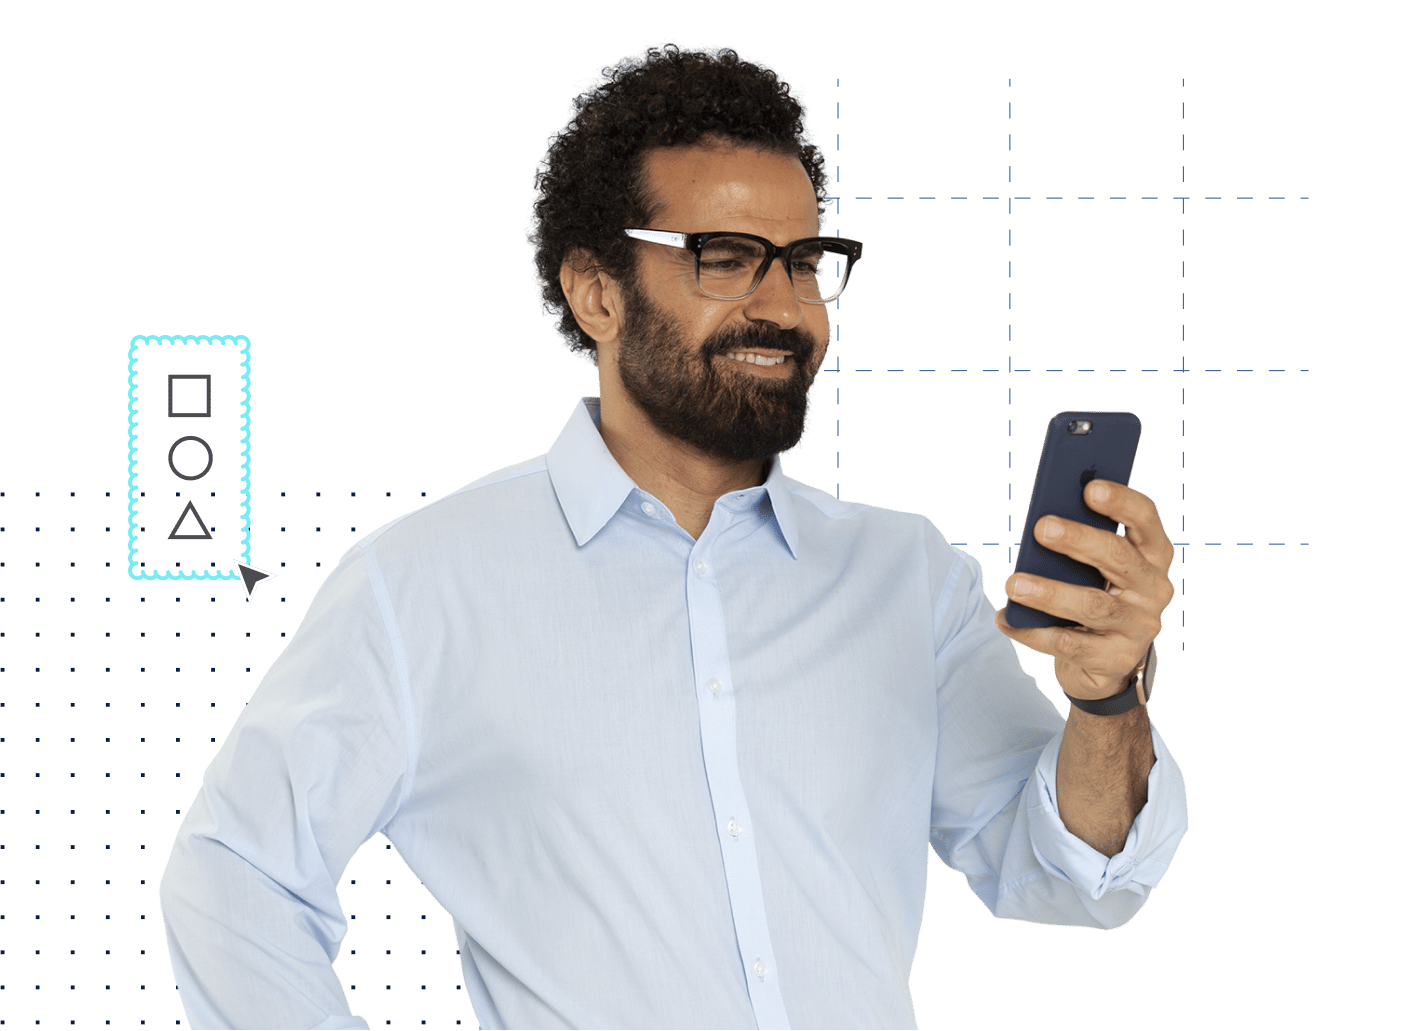 homme architecte en chemise boutonnée avec des lunettes regardant un appareil mobile